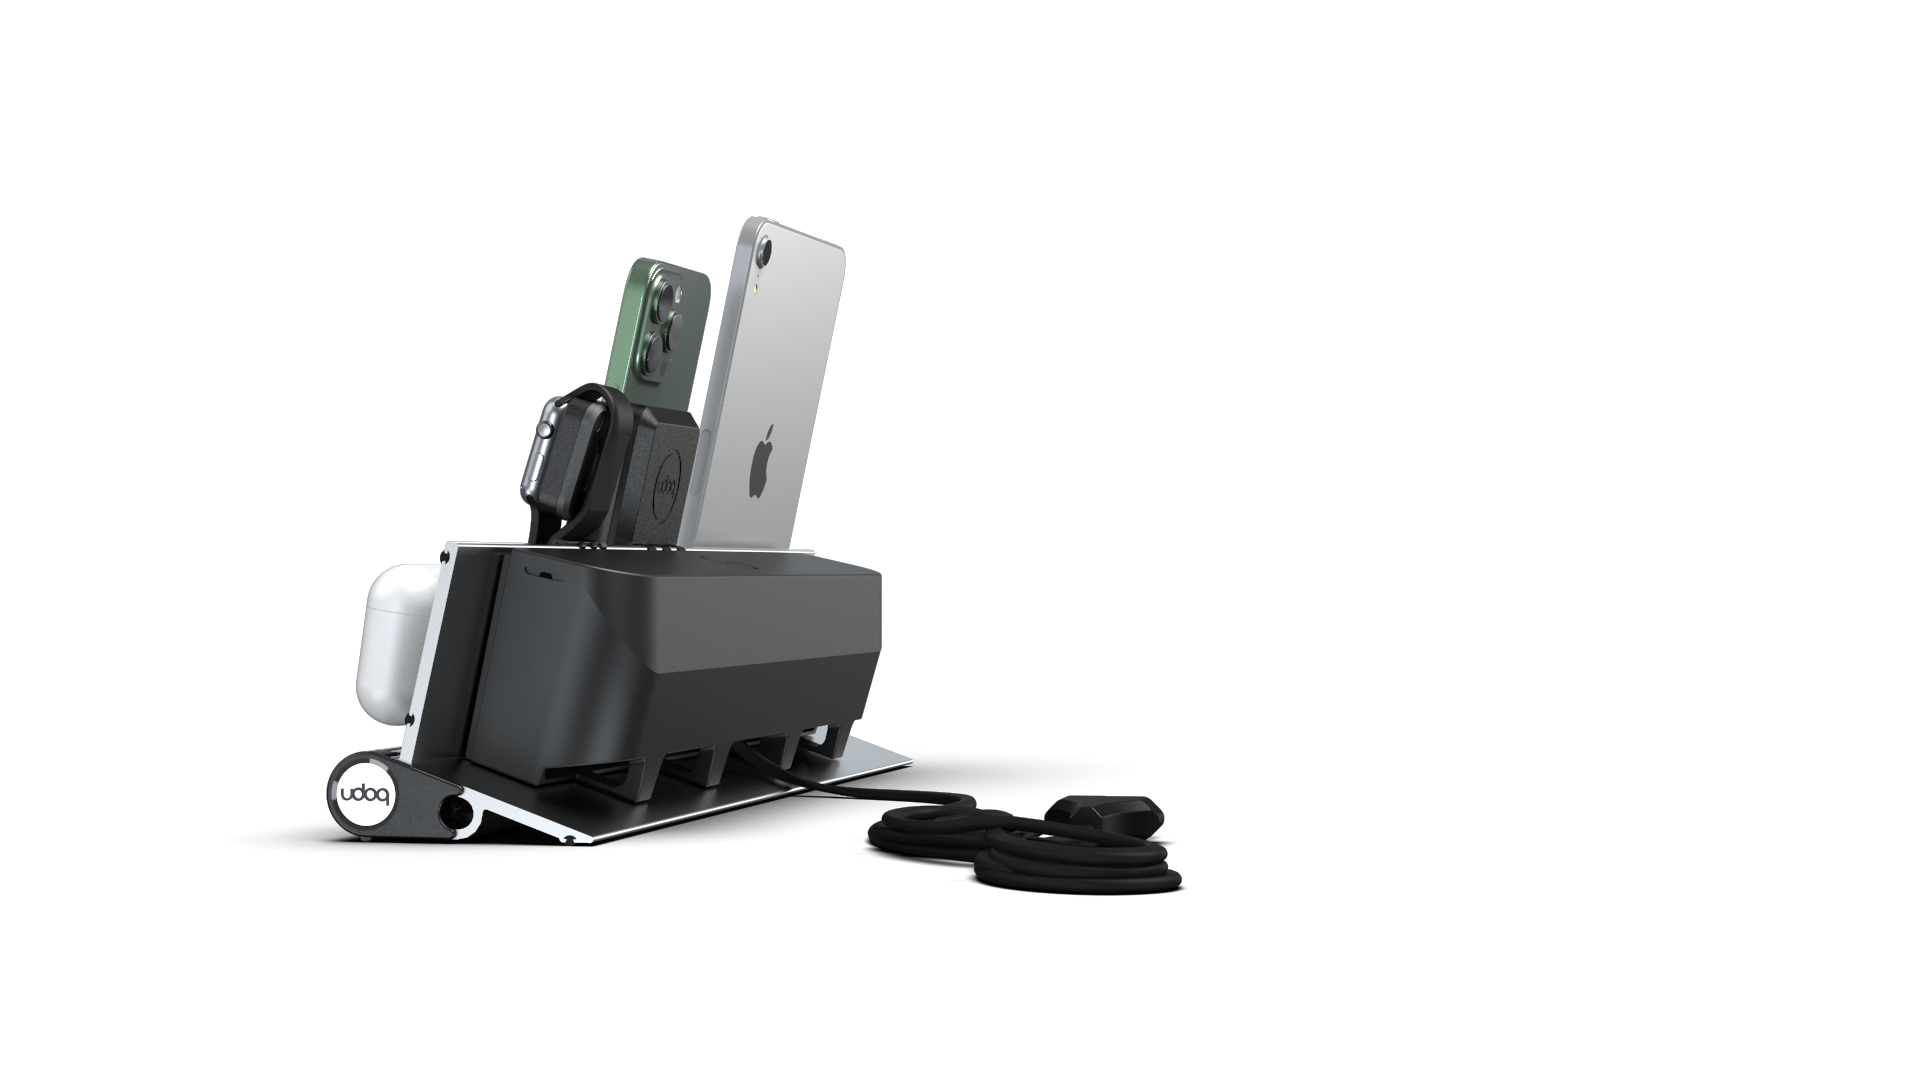 udoq Estación de carga múltiple 400 en plata con cargador MagSafe y Power Delivery, adaptador para Apple Watch